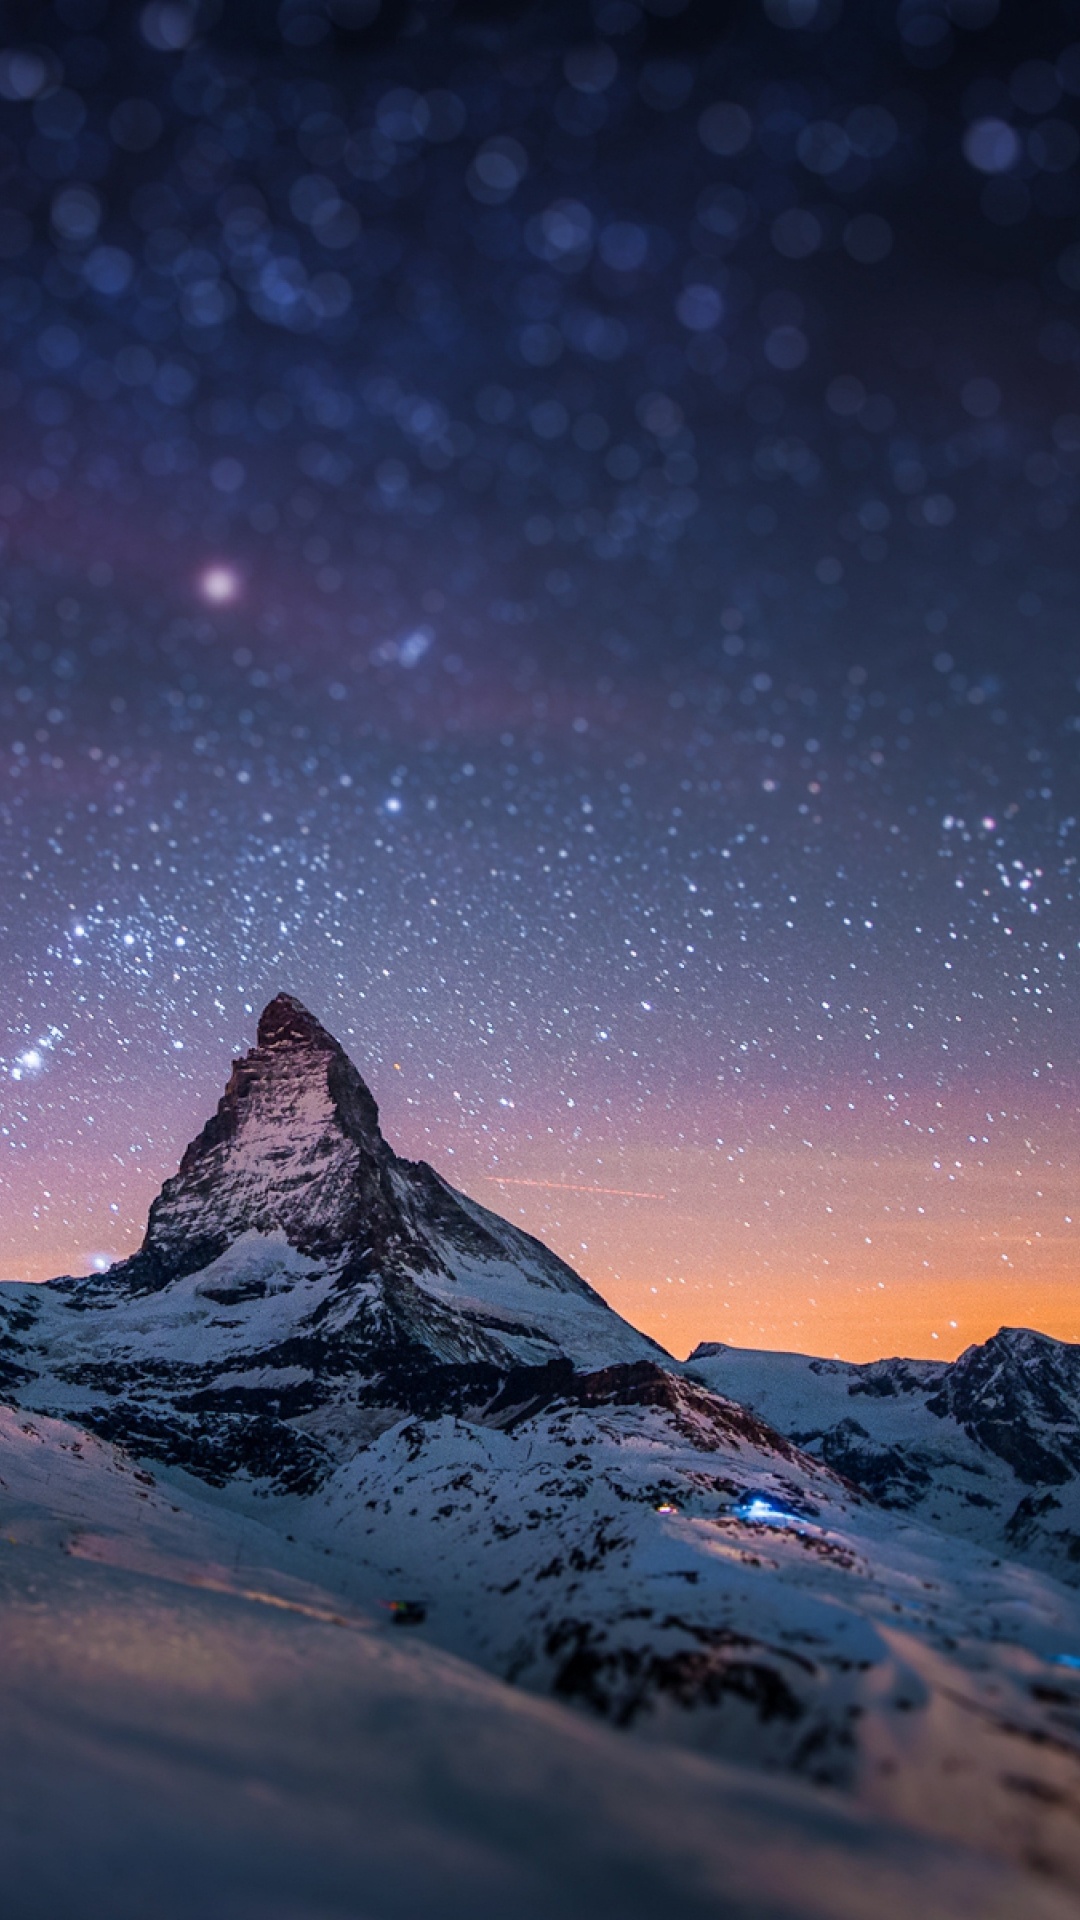 Montaña Cubierta de Nieve Bajo la Noche Estrellada. Wallpaper in 1080x1920 Resolution